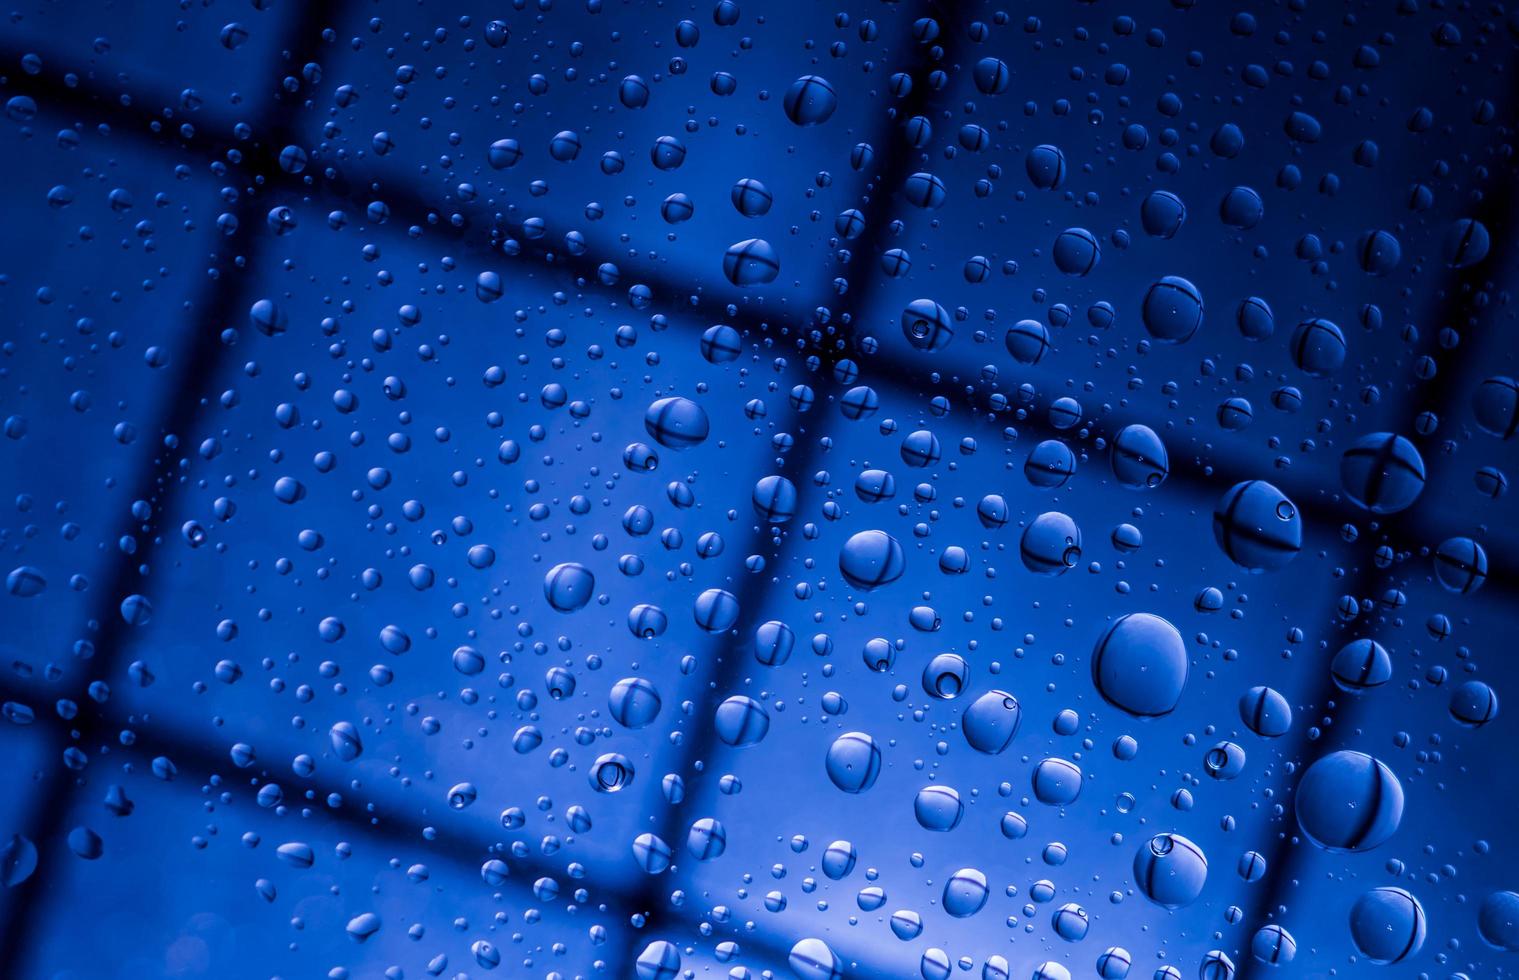 blauer abstrakter unschärfehintergrund mit wassertropfen und reflexion auf transparentem glas. blauer hintergrund für einsame, traurige und vermisste jemanden am regnerischen tageskonzept foto